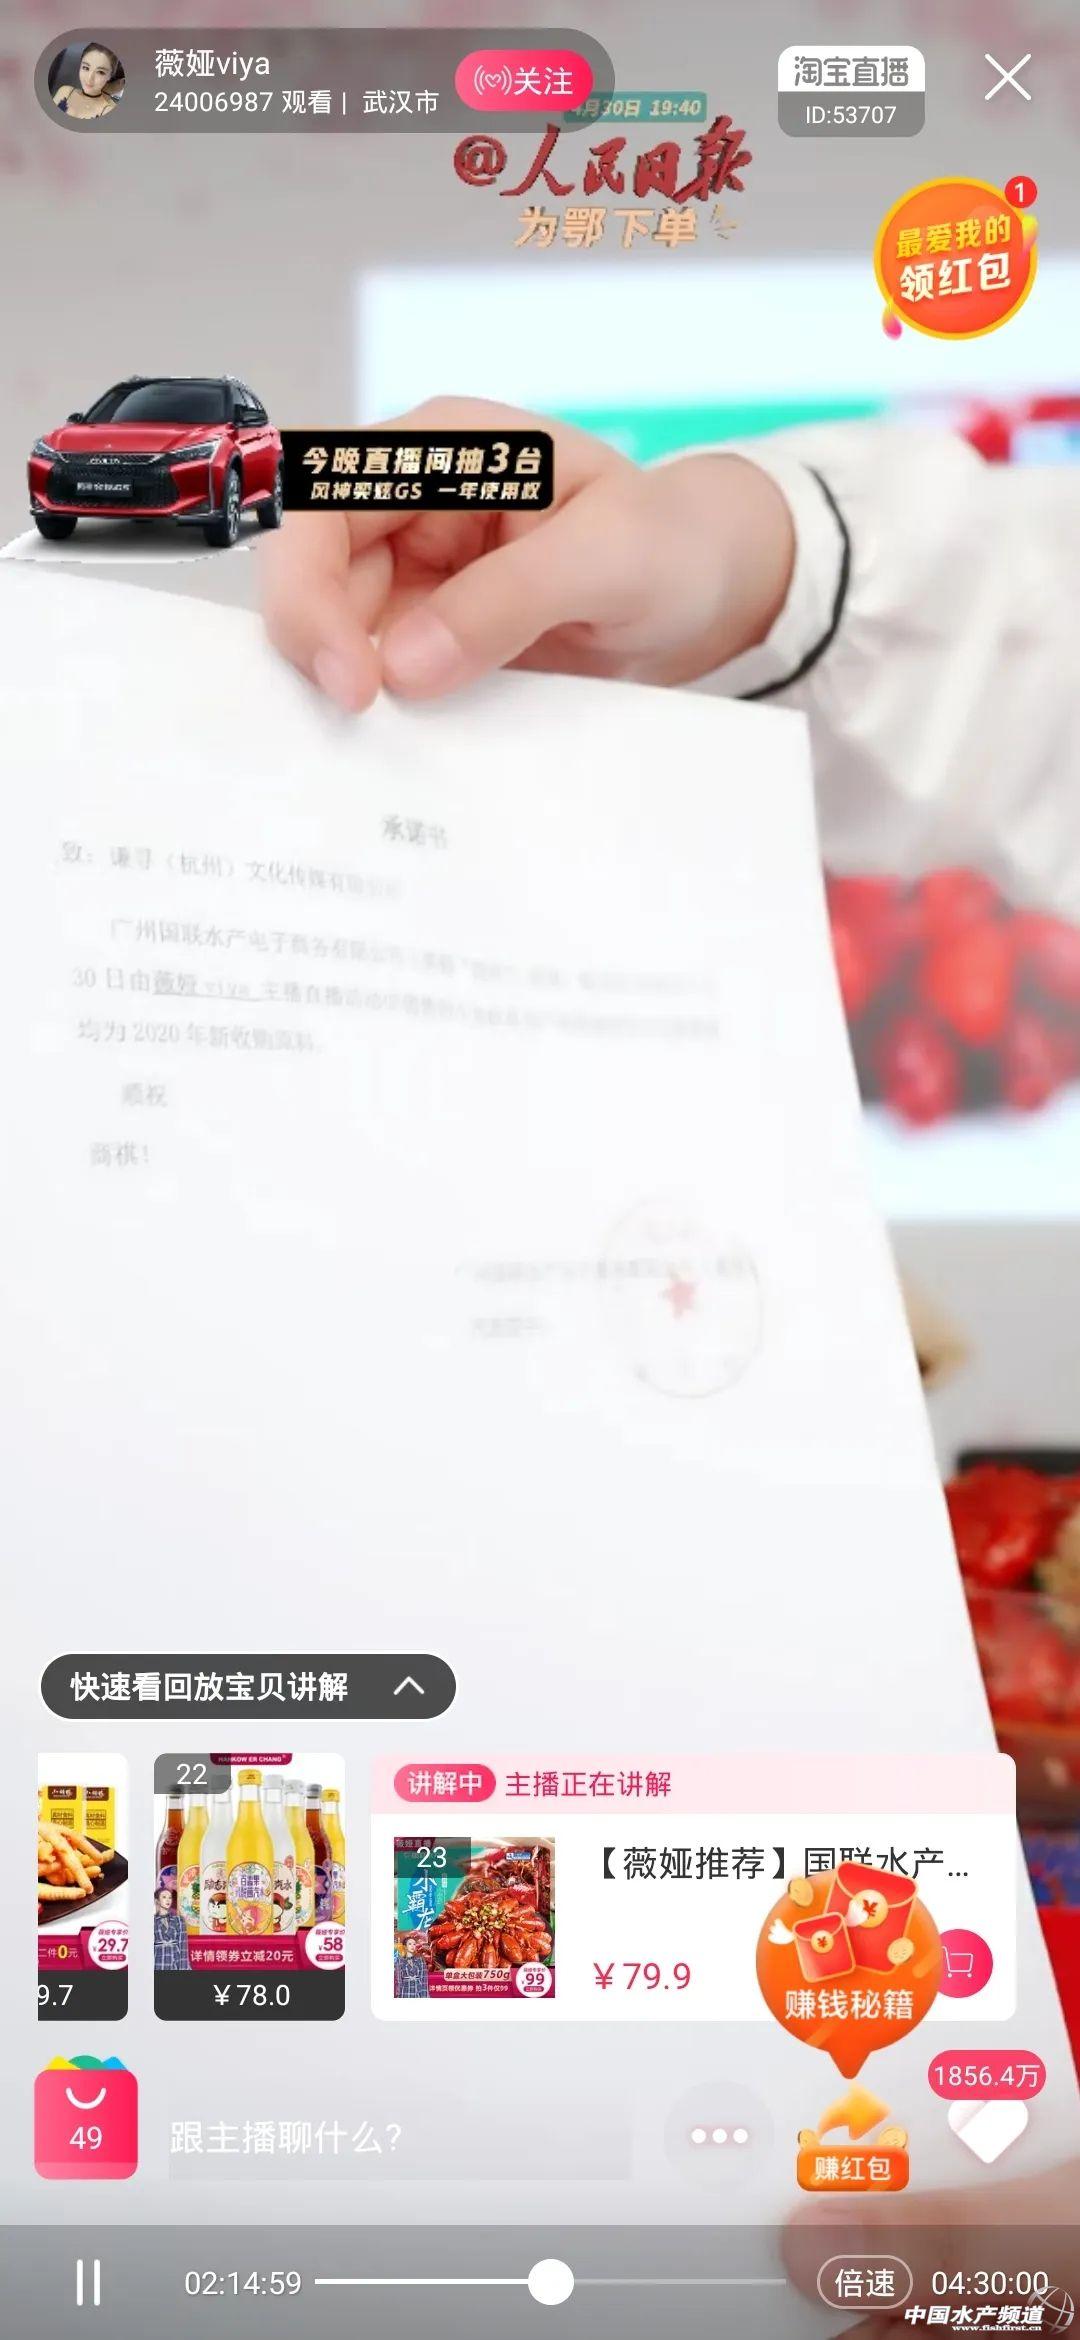 销售额达927万！薇娅<a href='https://www.zhouxiaohui.cn/duanshipin/
' target='_blank'>直播带货</a>国联小龙虾，水产业云时代开启-第4张图片-周小辉博客